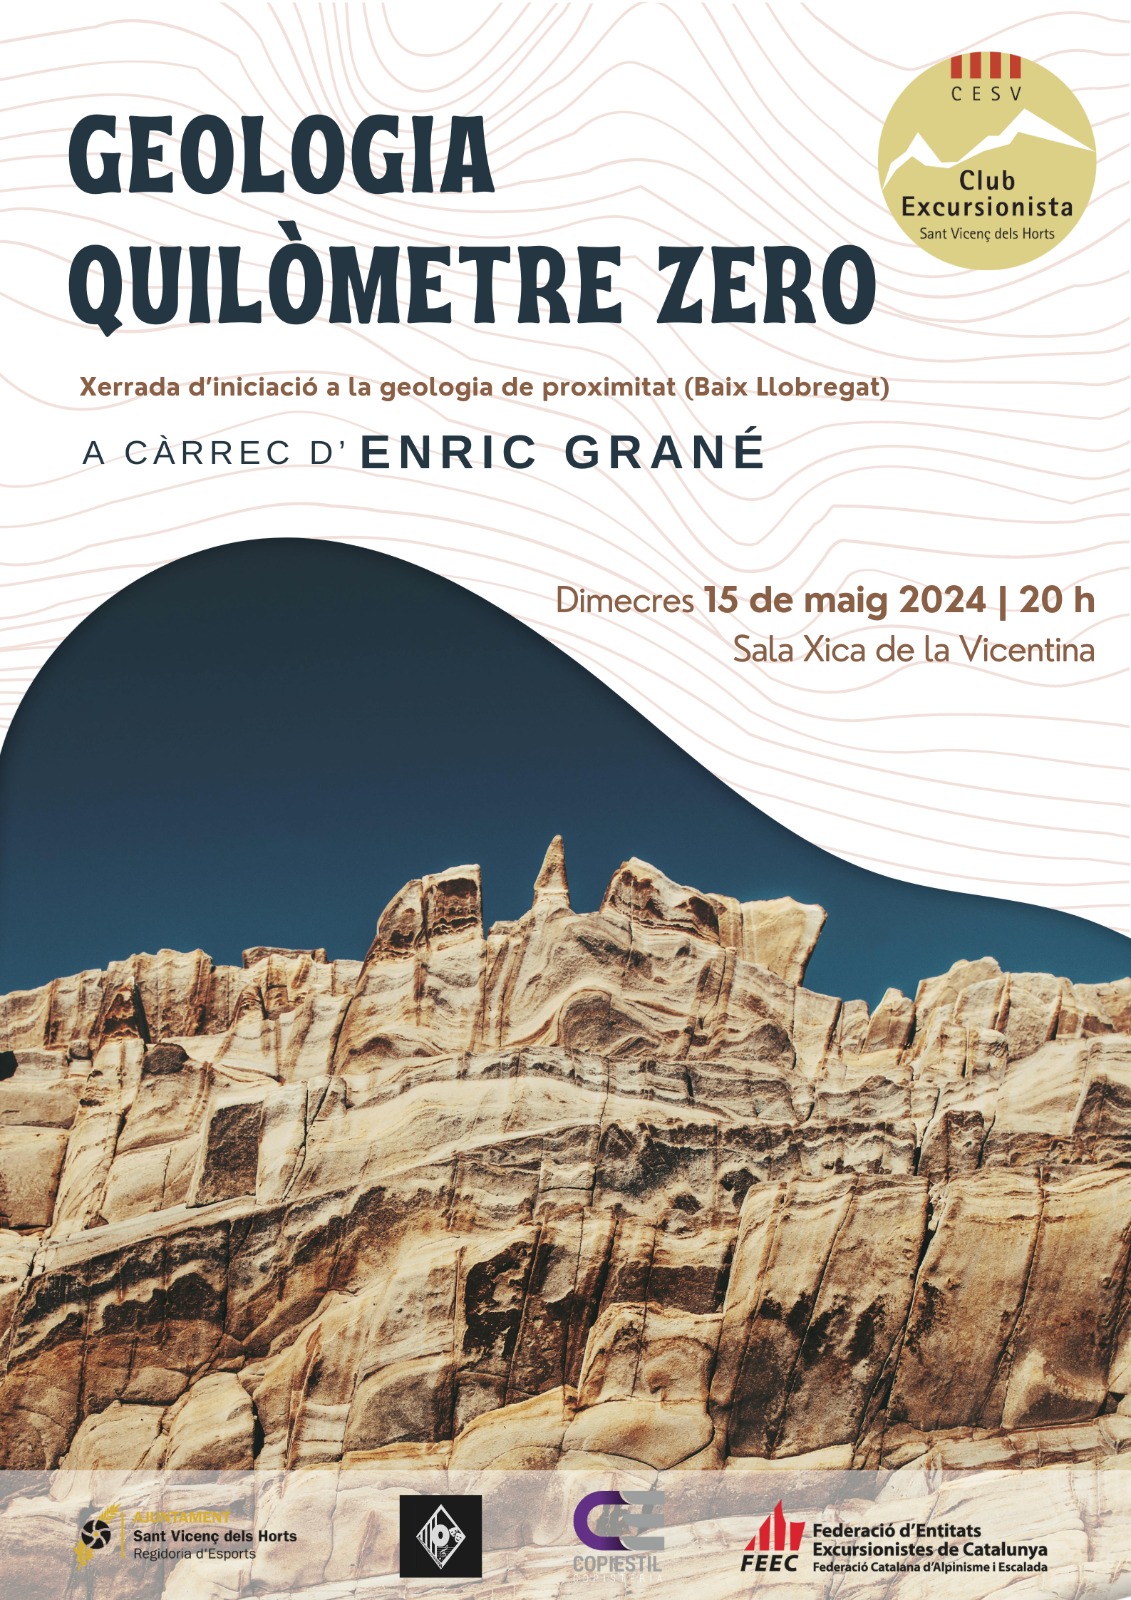 Conferència : Geologia quilòmetre Zero a càrrec d’Enric Grané (geòleg)